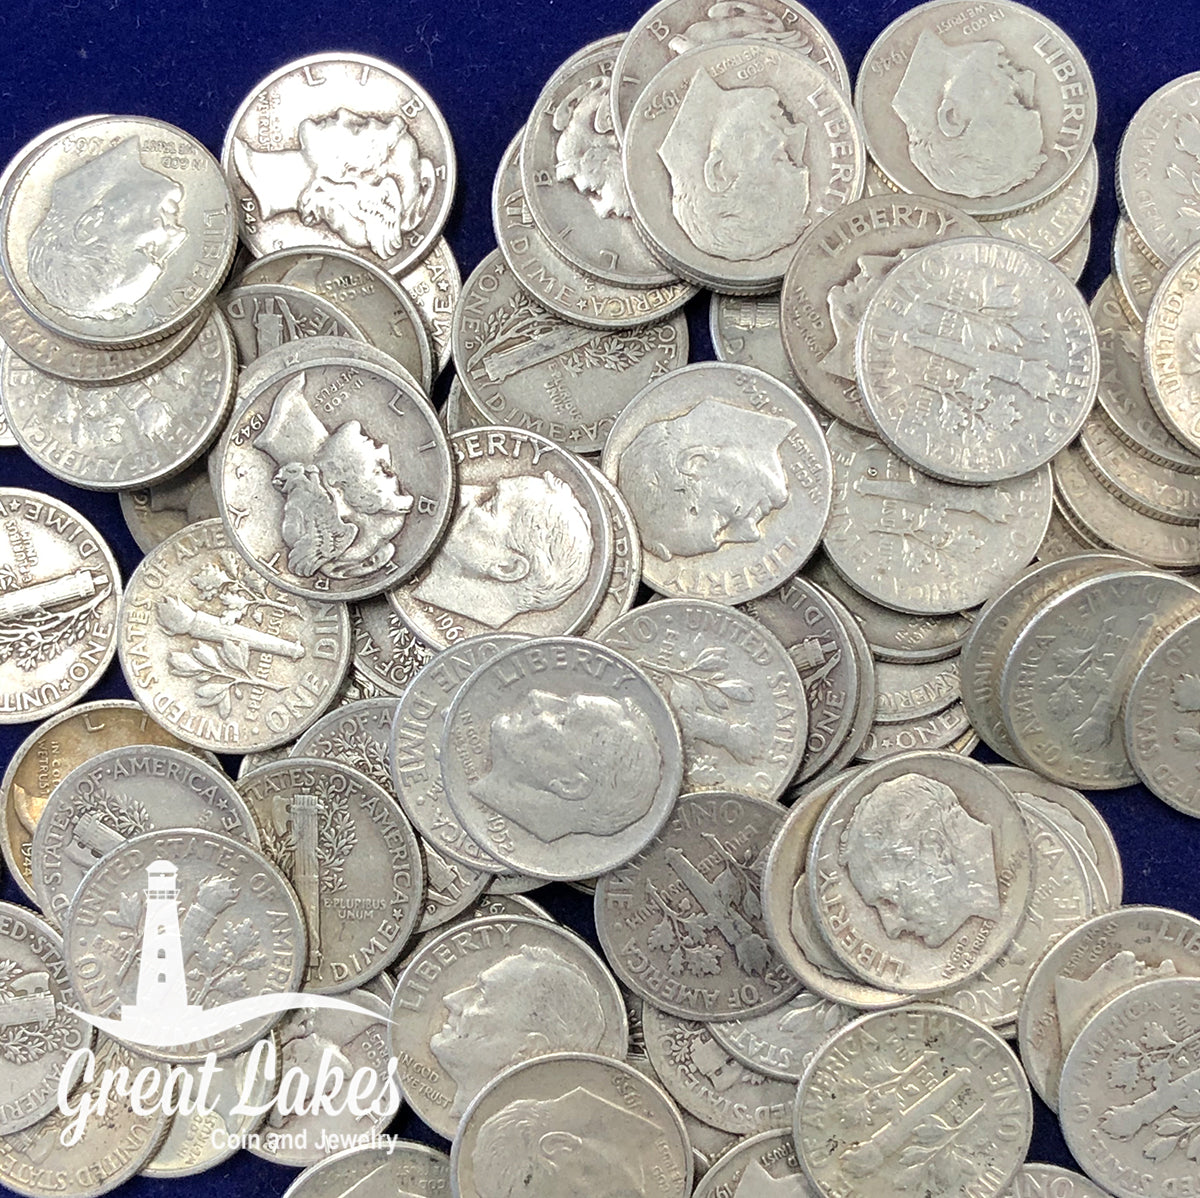 90% Silver Mercury Head Dimes - $1 FV